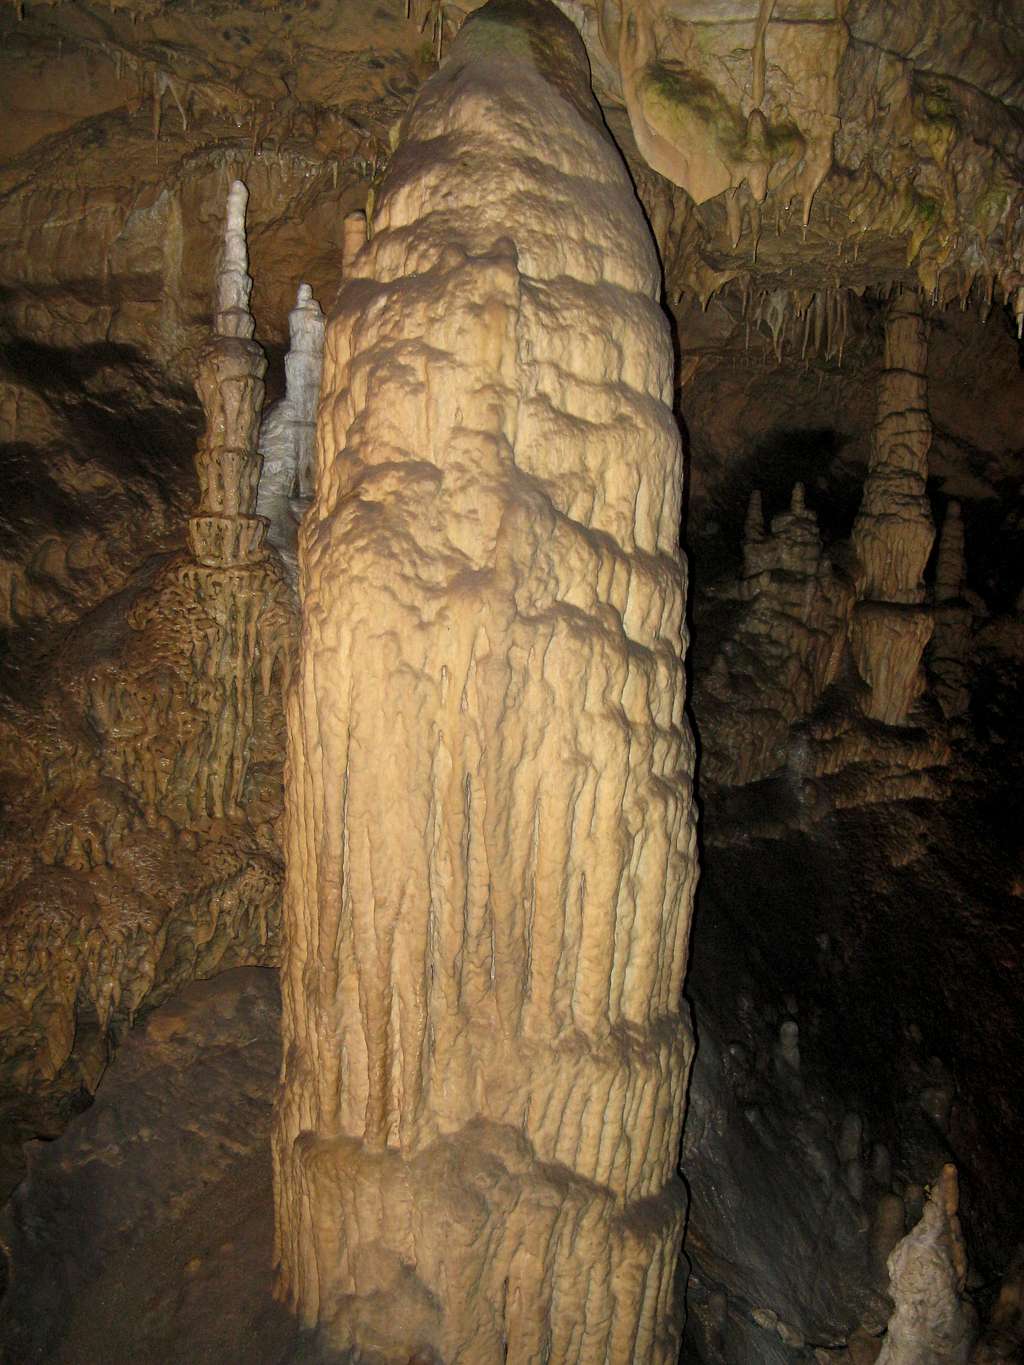 Huge stalagmite